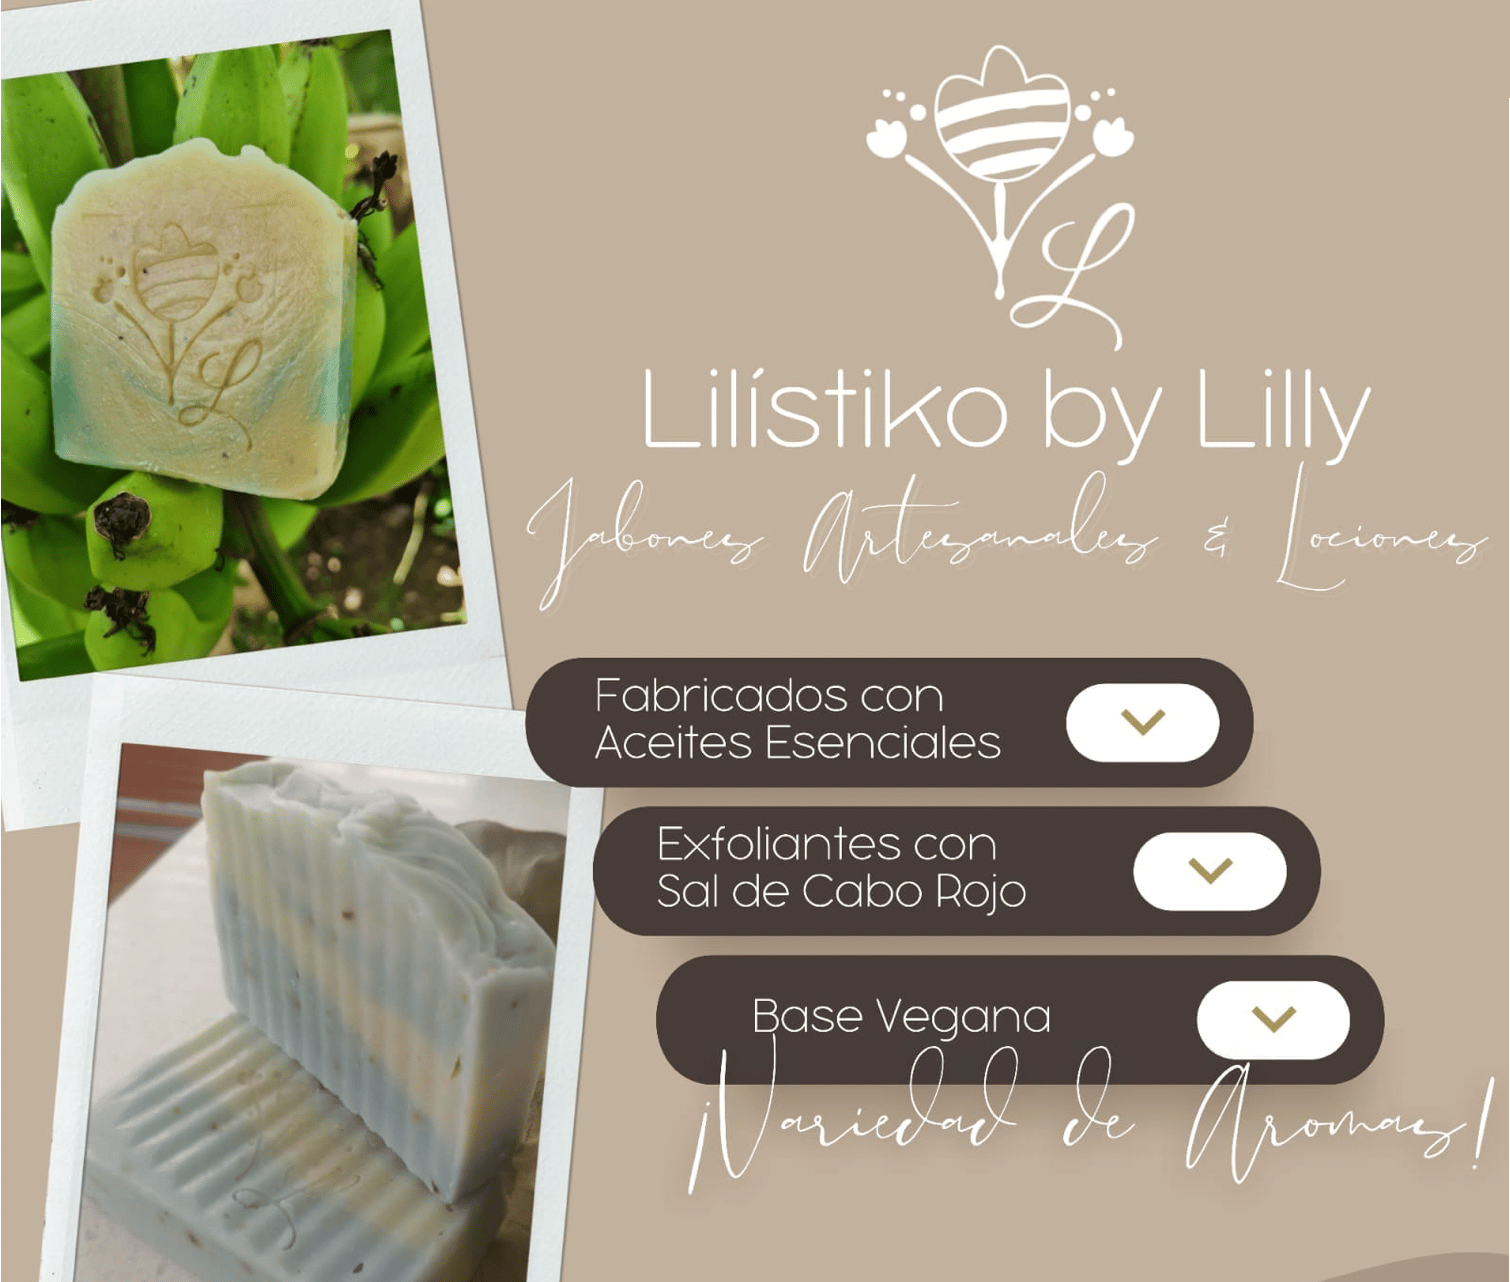 Lilístiko by Lilly